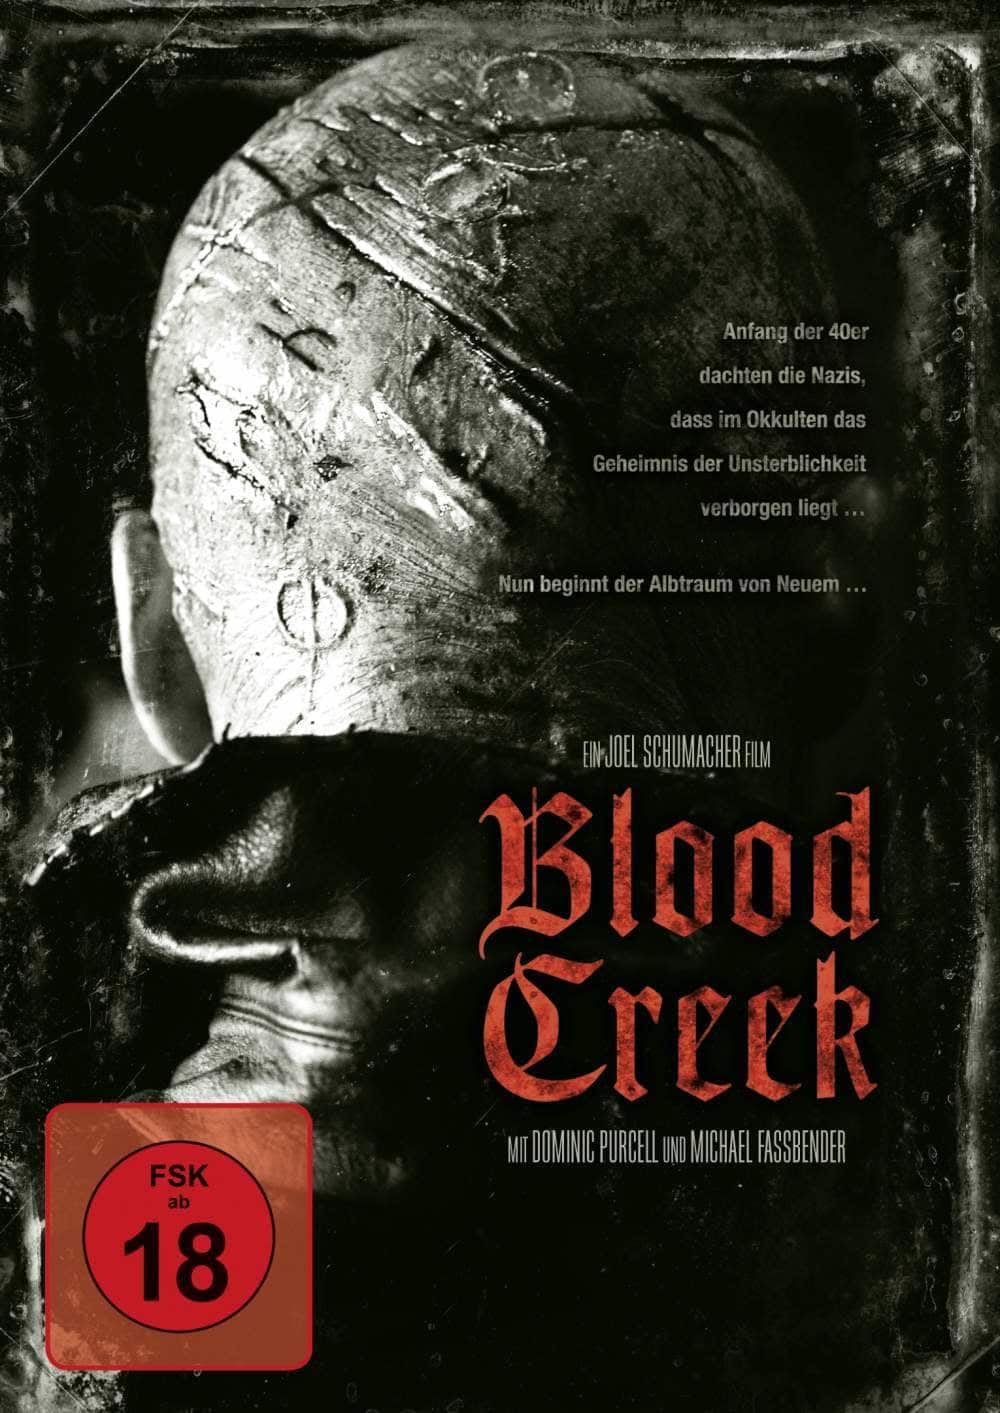 Plakat von "Blood Creek"